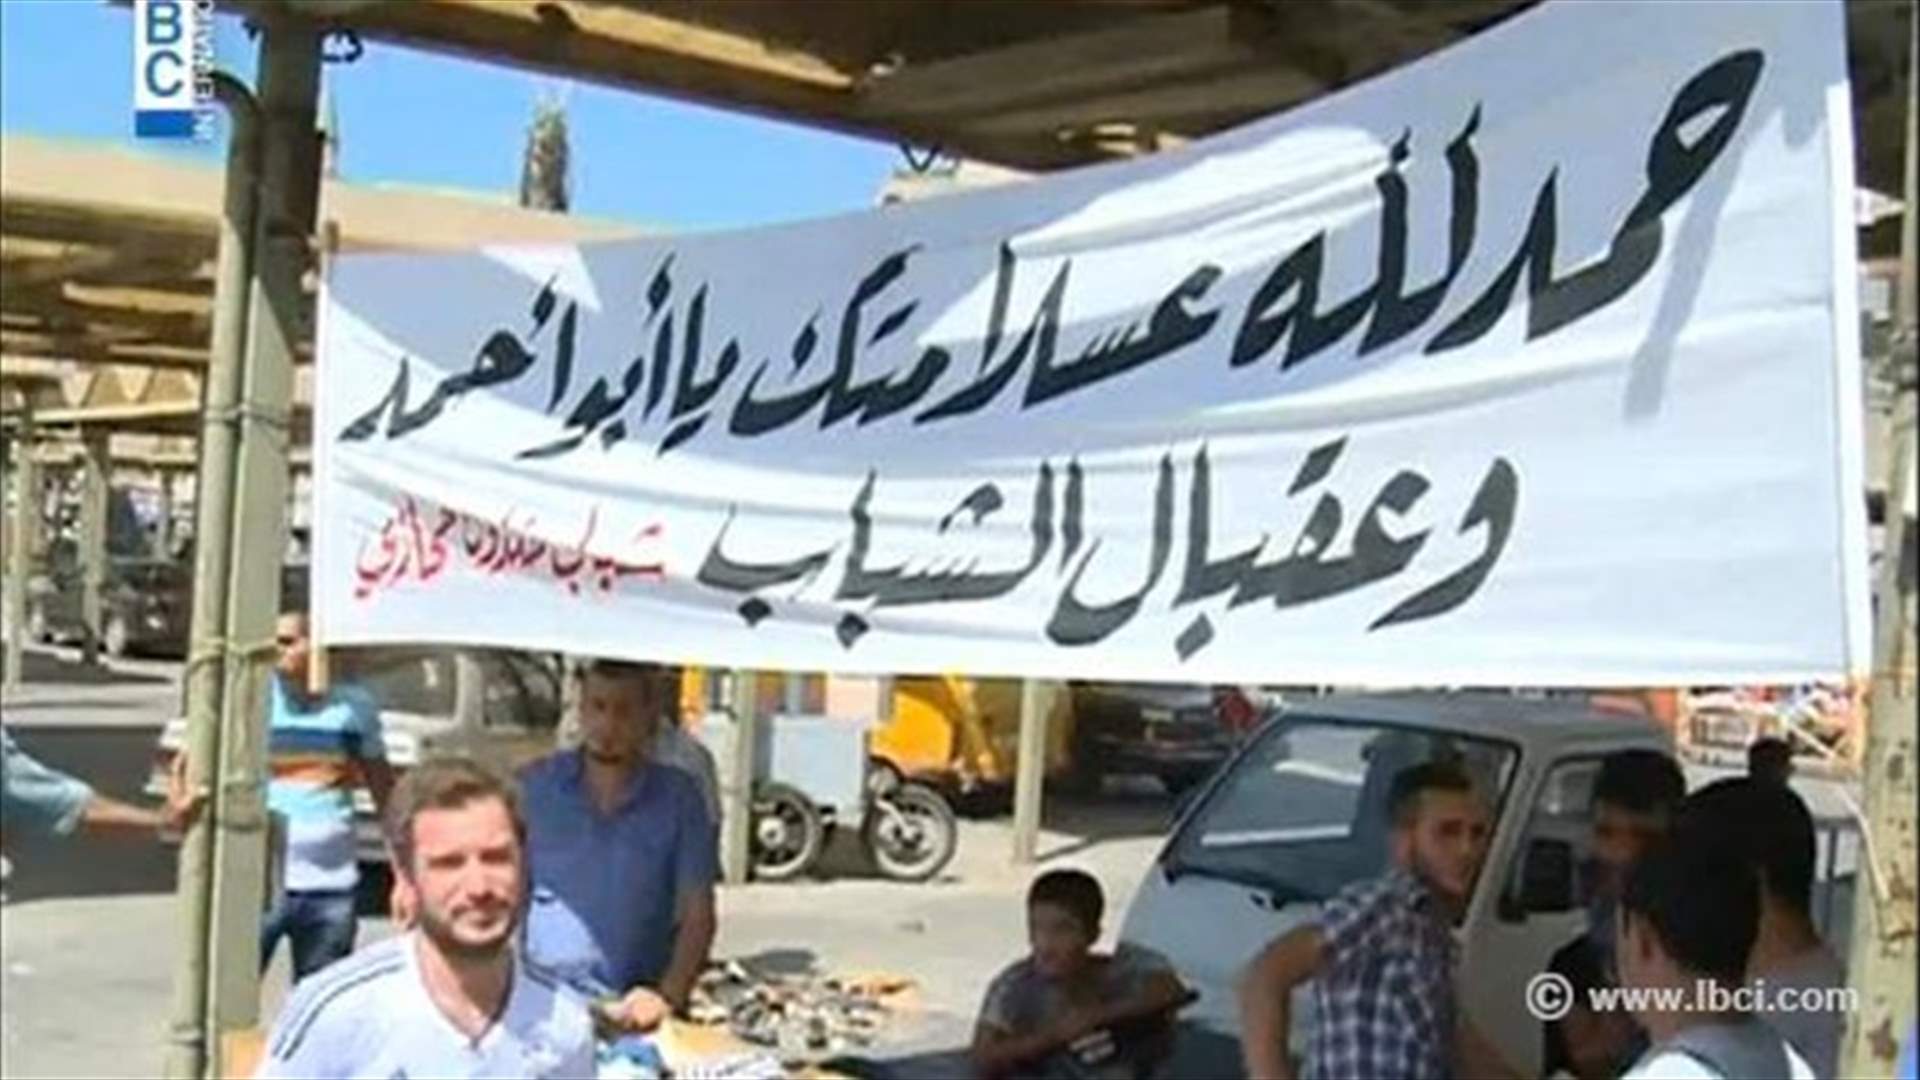 المفرقعات بدلا من الرصاص في طرابلس